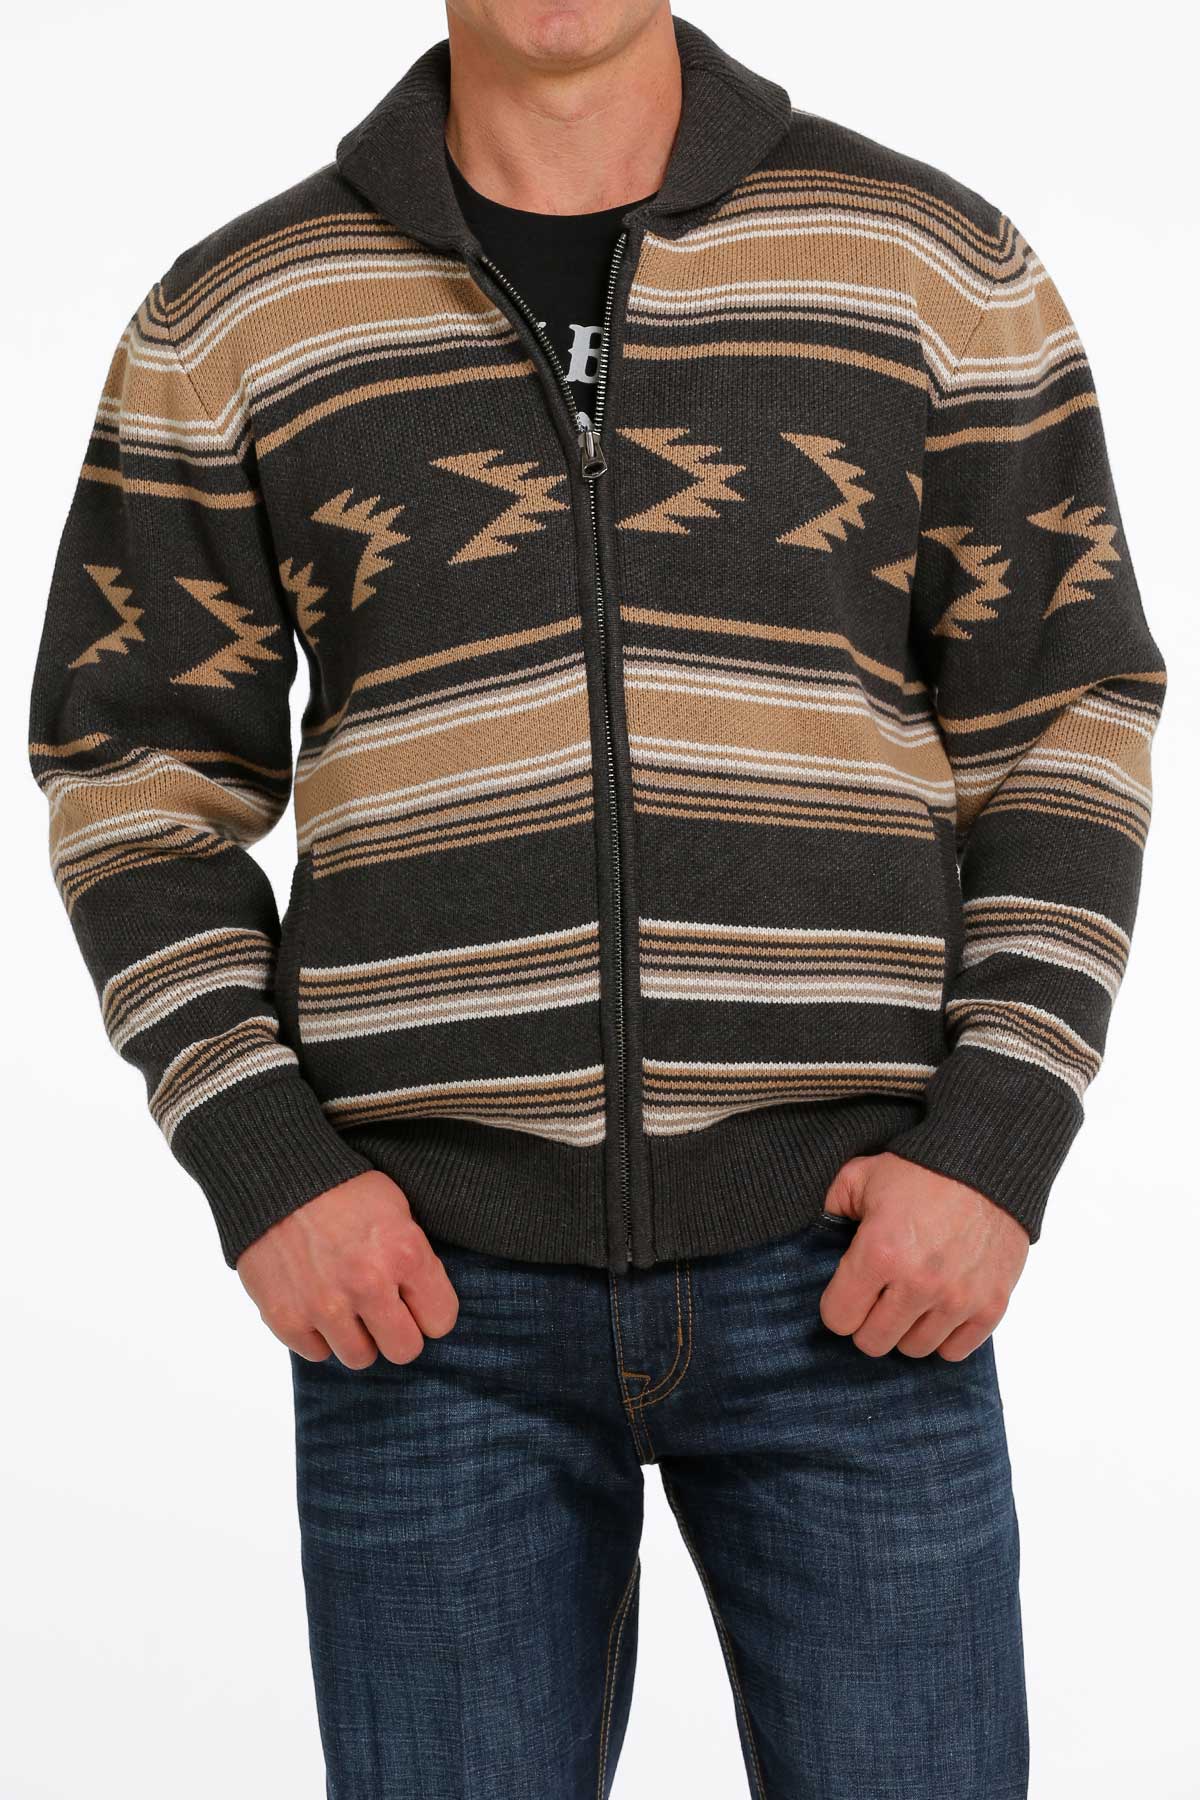 CINCH Jeans  Men's 1/4 Zip Aztec Print Pullover Sweater - khaki